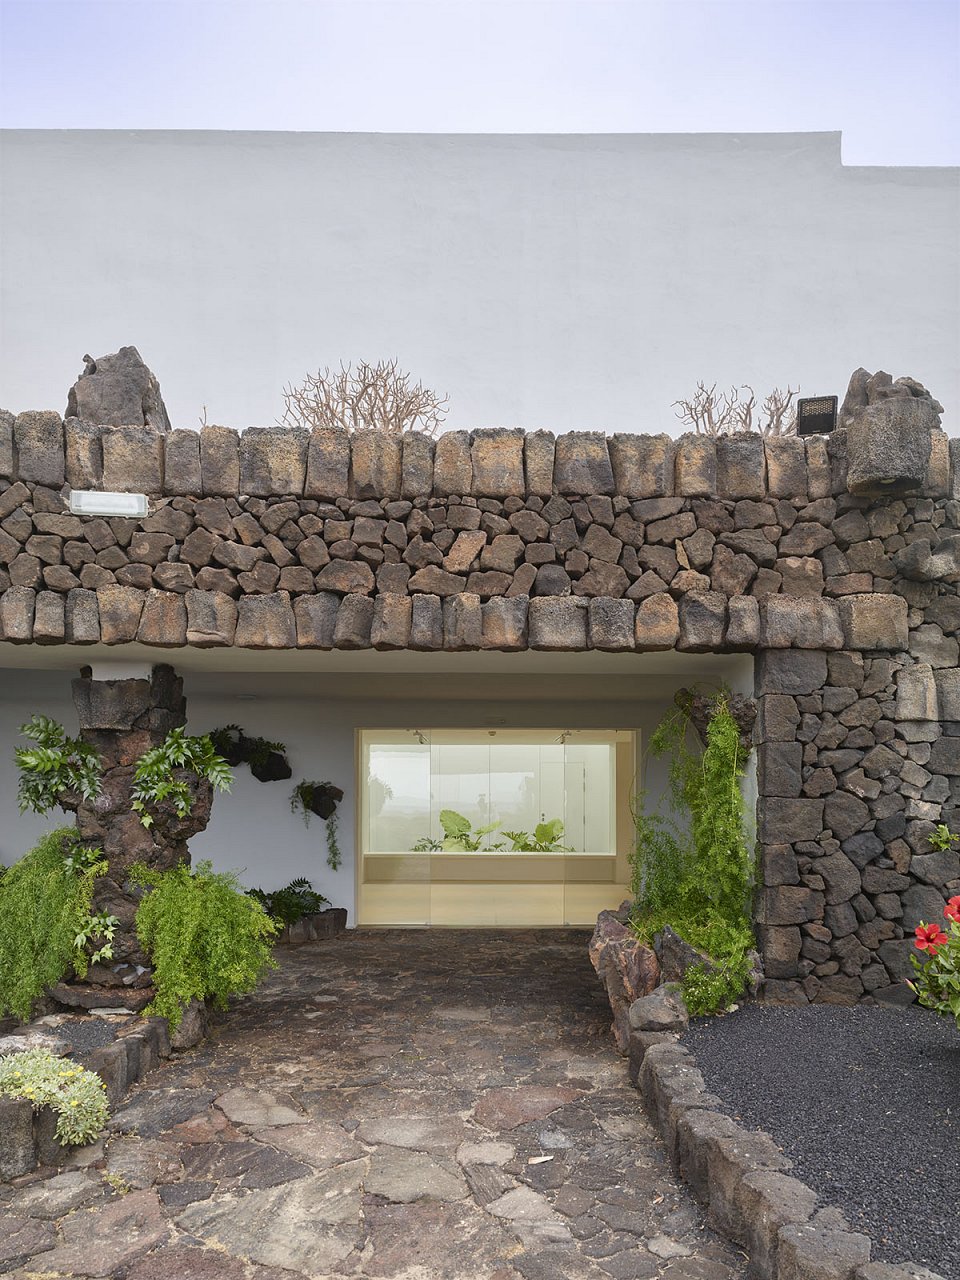 GPY Arquitectos. The New Casa de Los Volcanes Exhibition Space. Gallery Entrance. Photograph: Roland Halbe